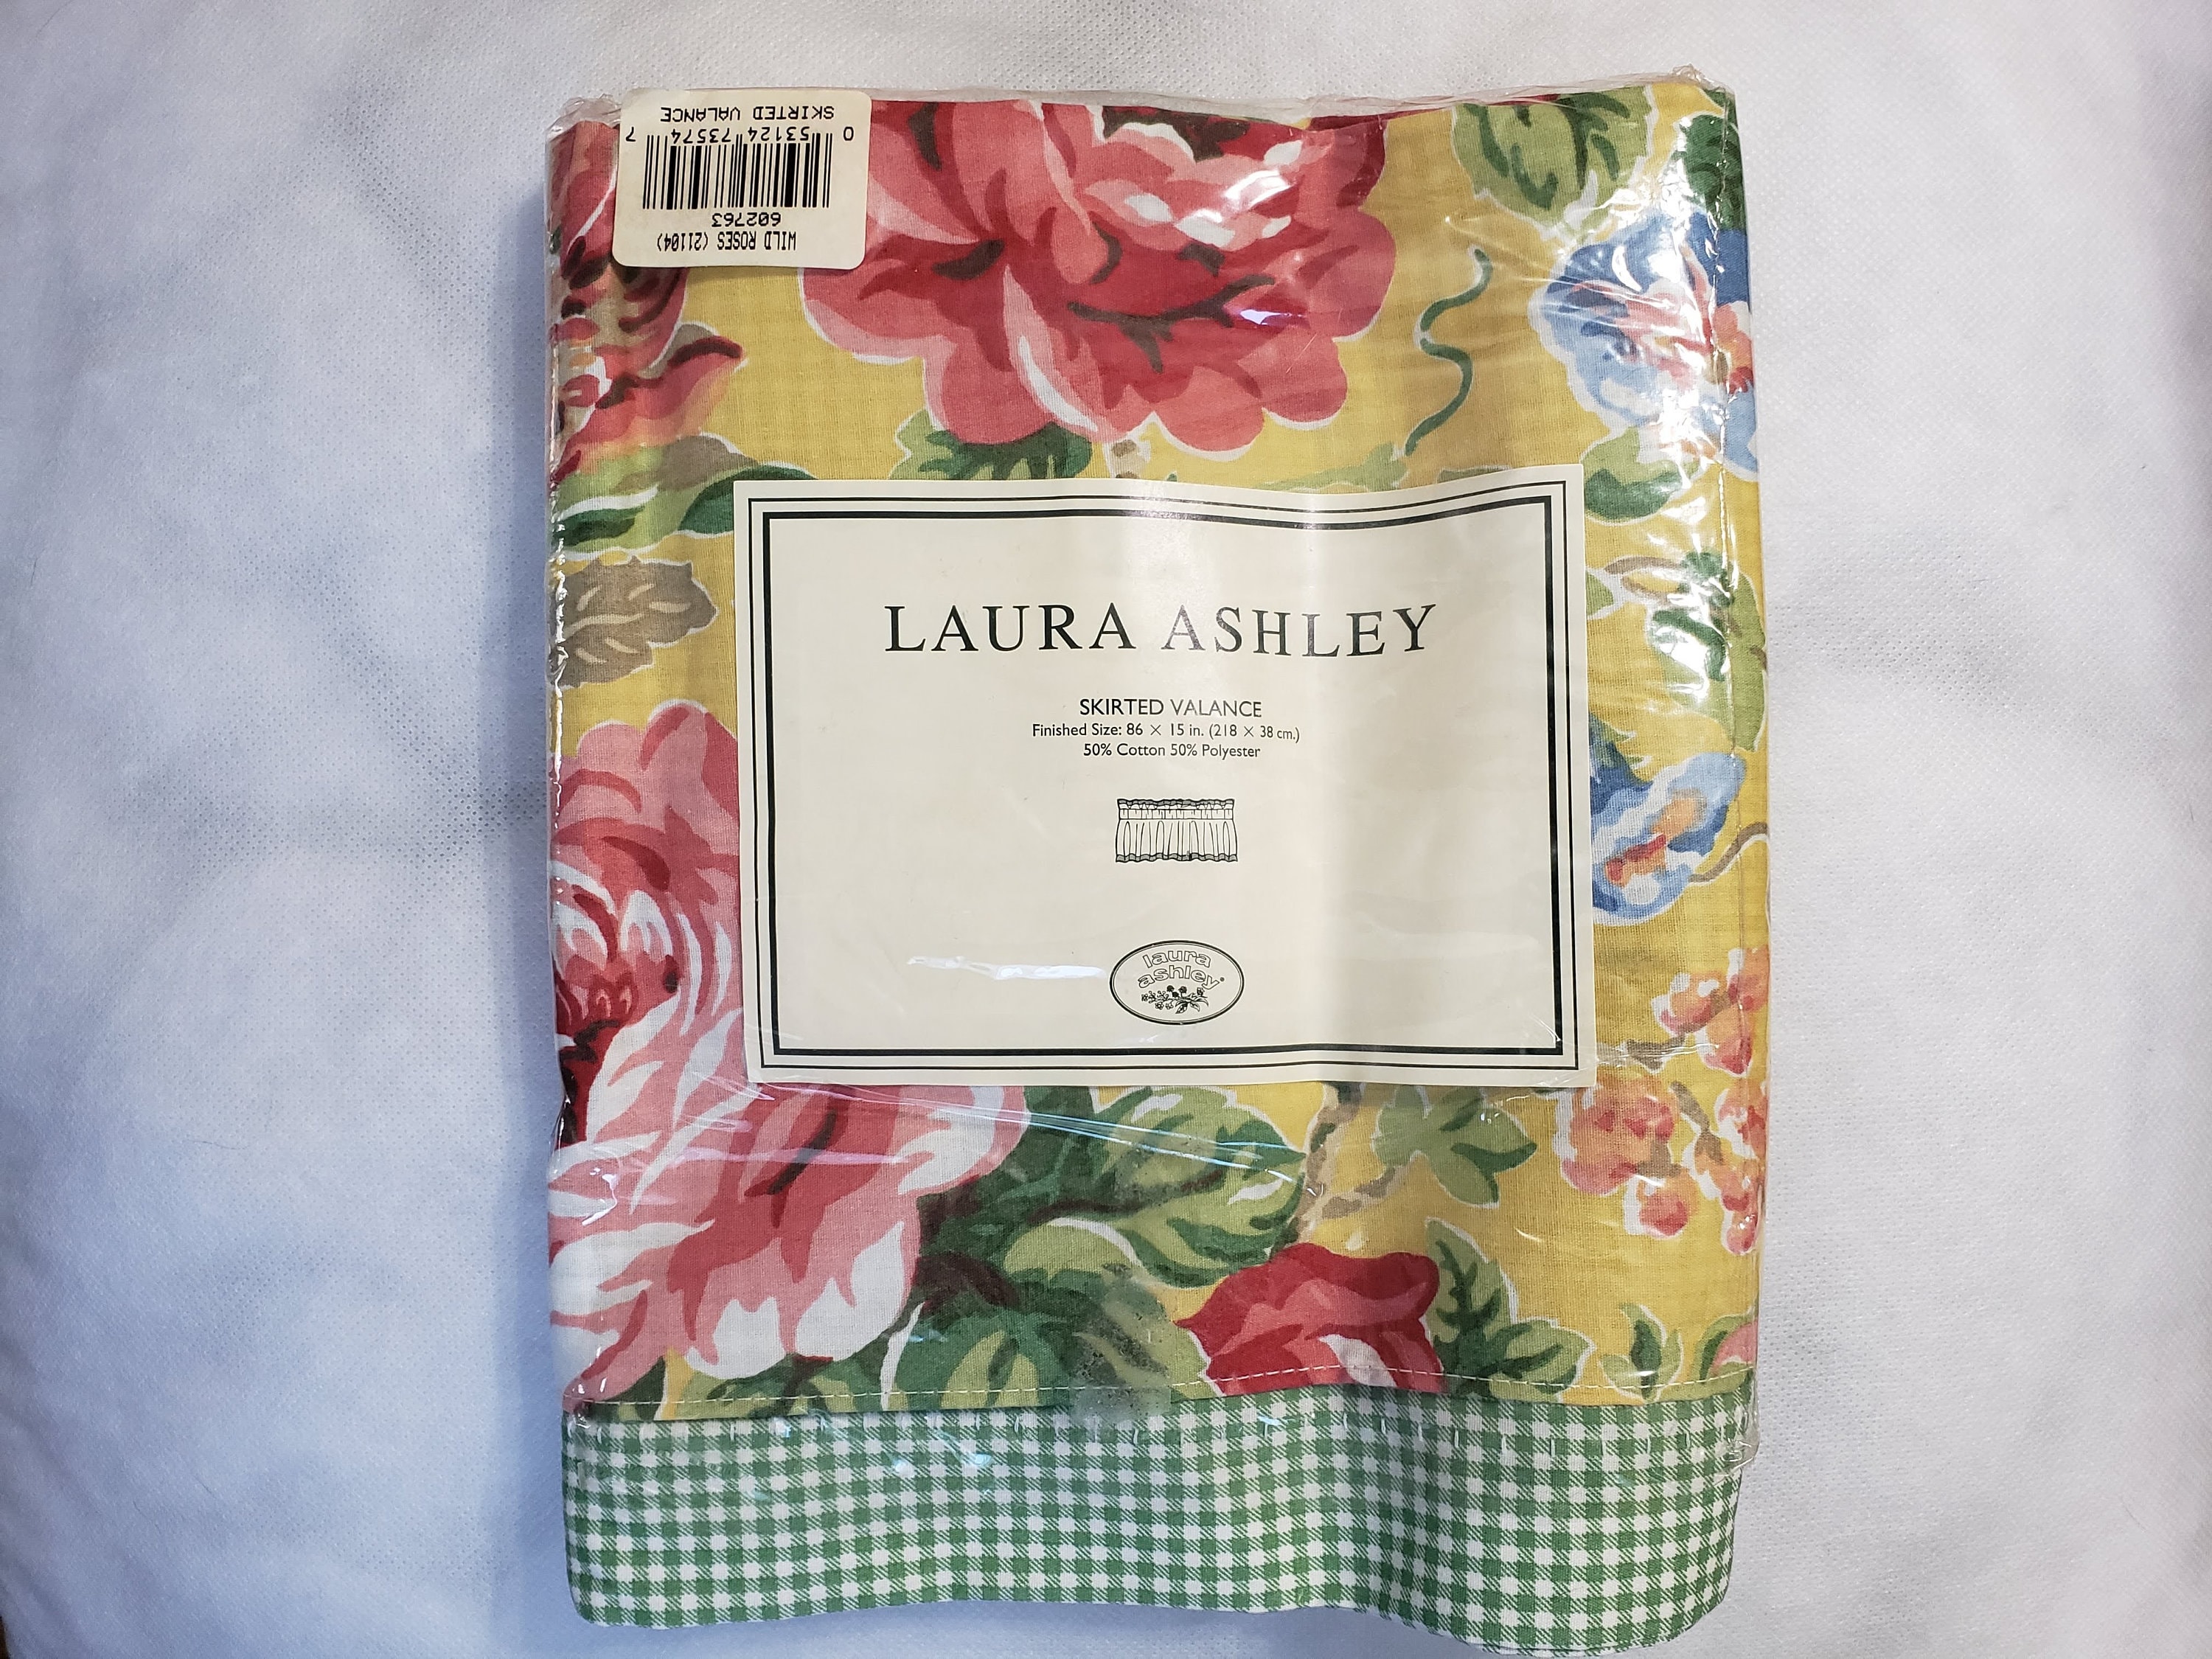 Laura Ashley Skirted Valance: Wild Roses 